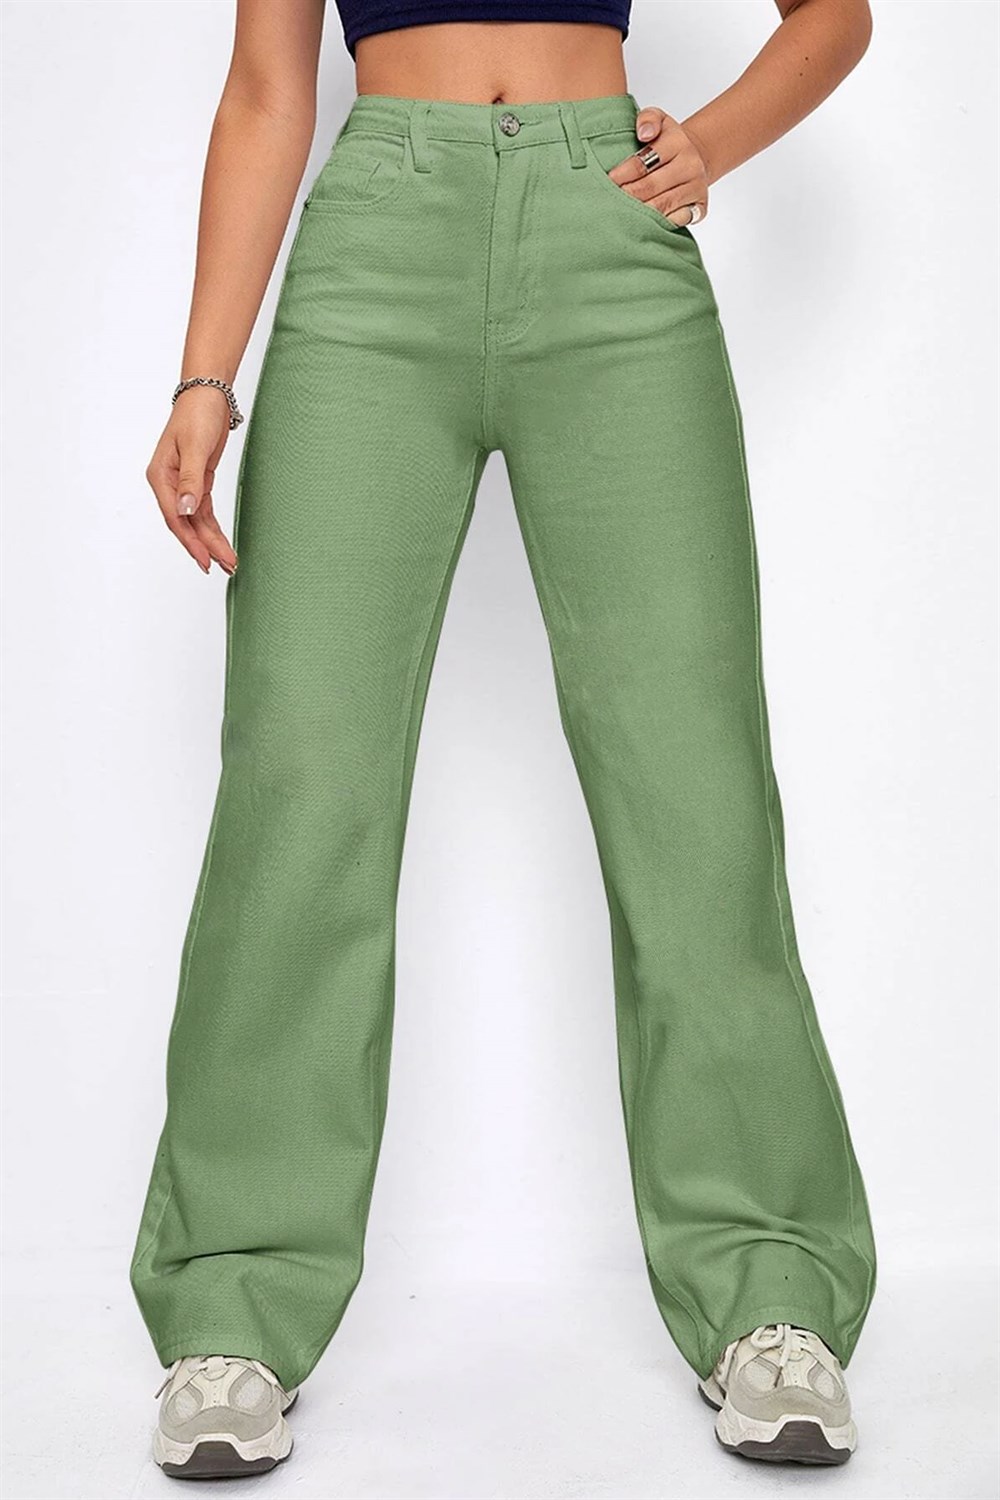 Mint Yeşil Bol Paça Pantolon Ürününü Hemen İncele